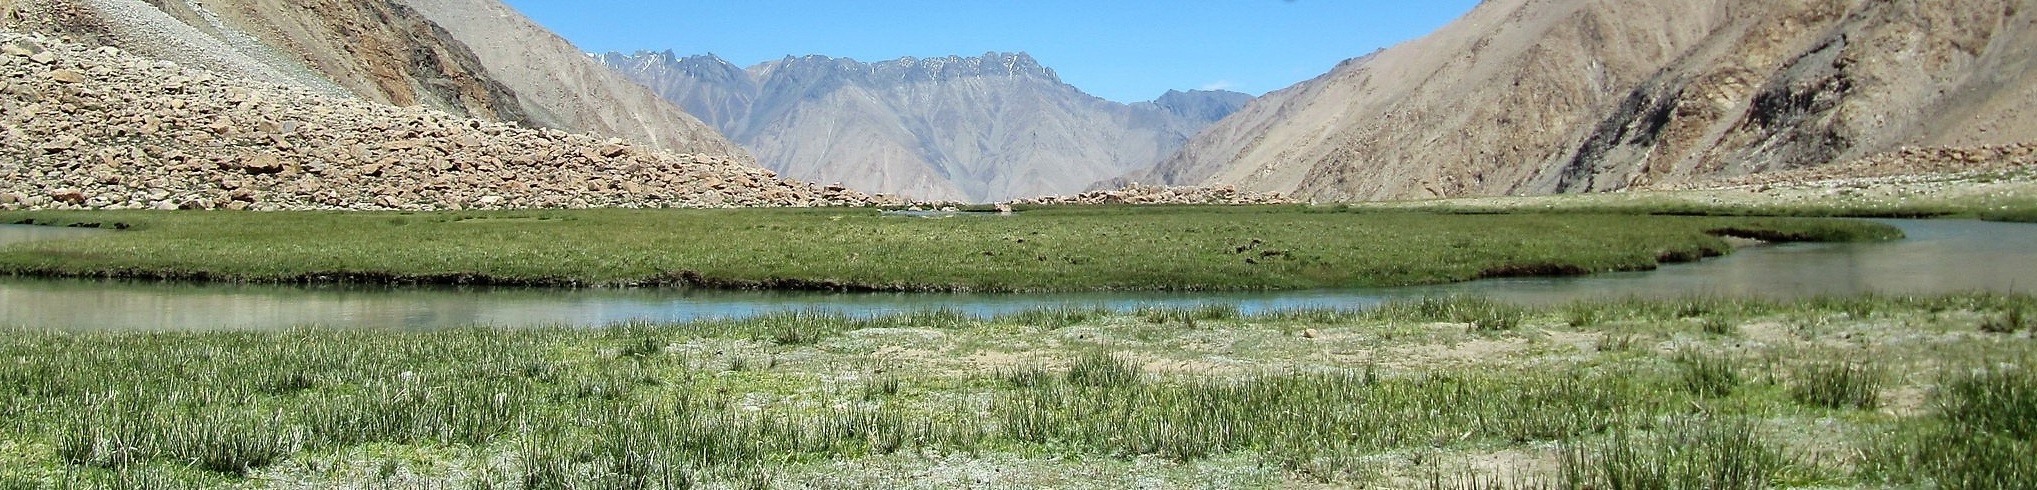 Ladakh - Nubra Valley Trekking